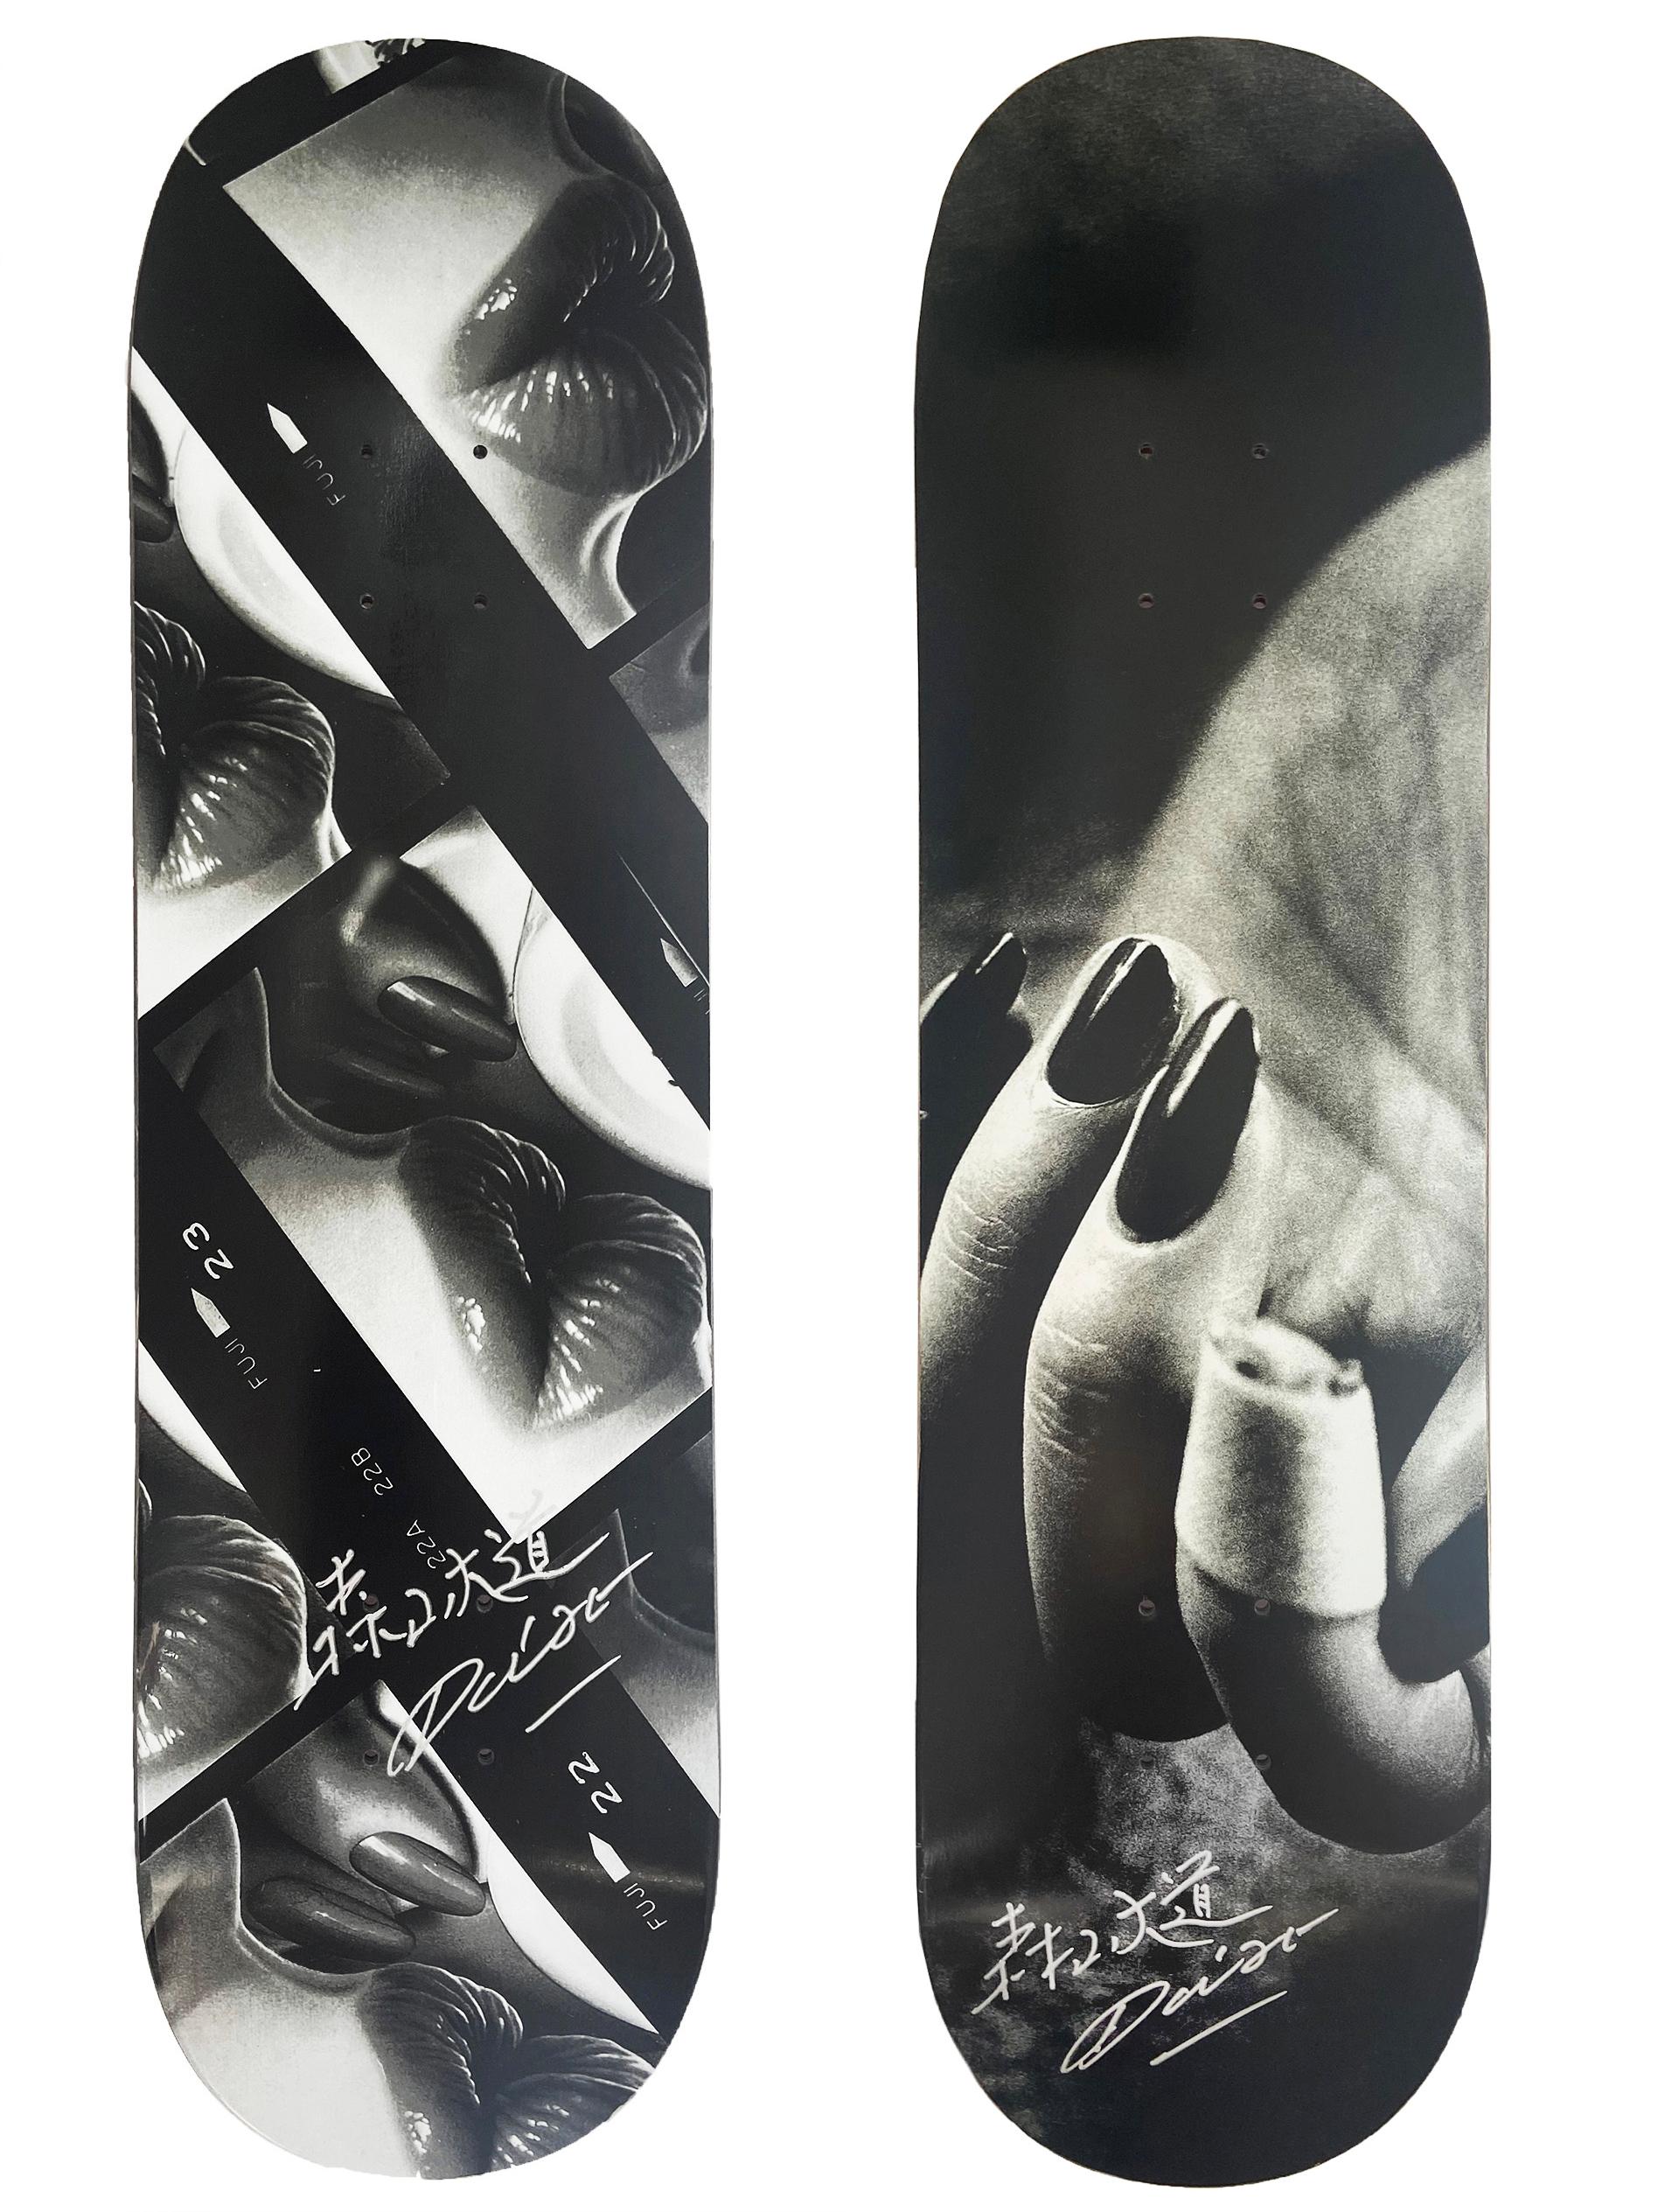 Handsignierte Daido Moriyama Skateboard-Decks: Satz von 2 individuellen Werken:
Diese Werke sind das Ergebnis der Collaboration zwischen dem legendären japanischen Straßenfotografen Daido Moriyama und Evisen Skateboards. Die Decks zeigen Moriyamas